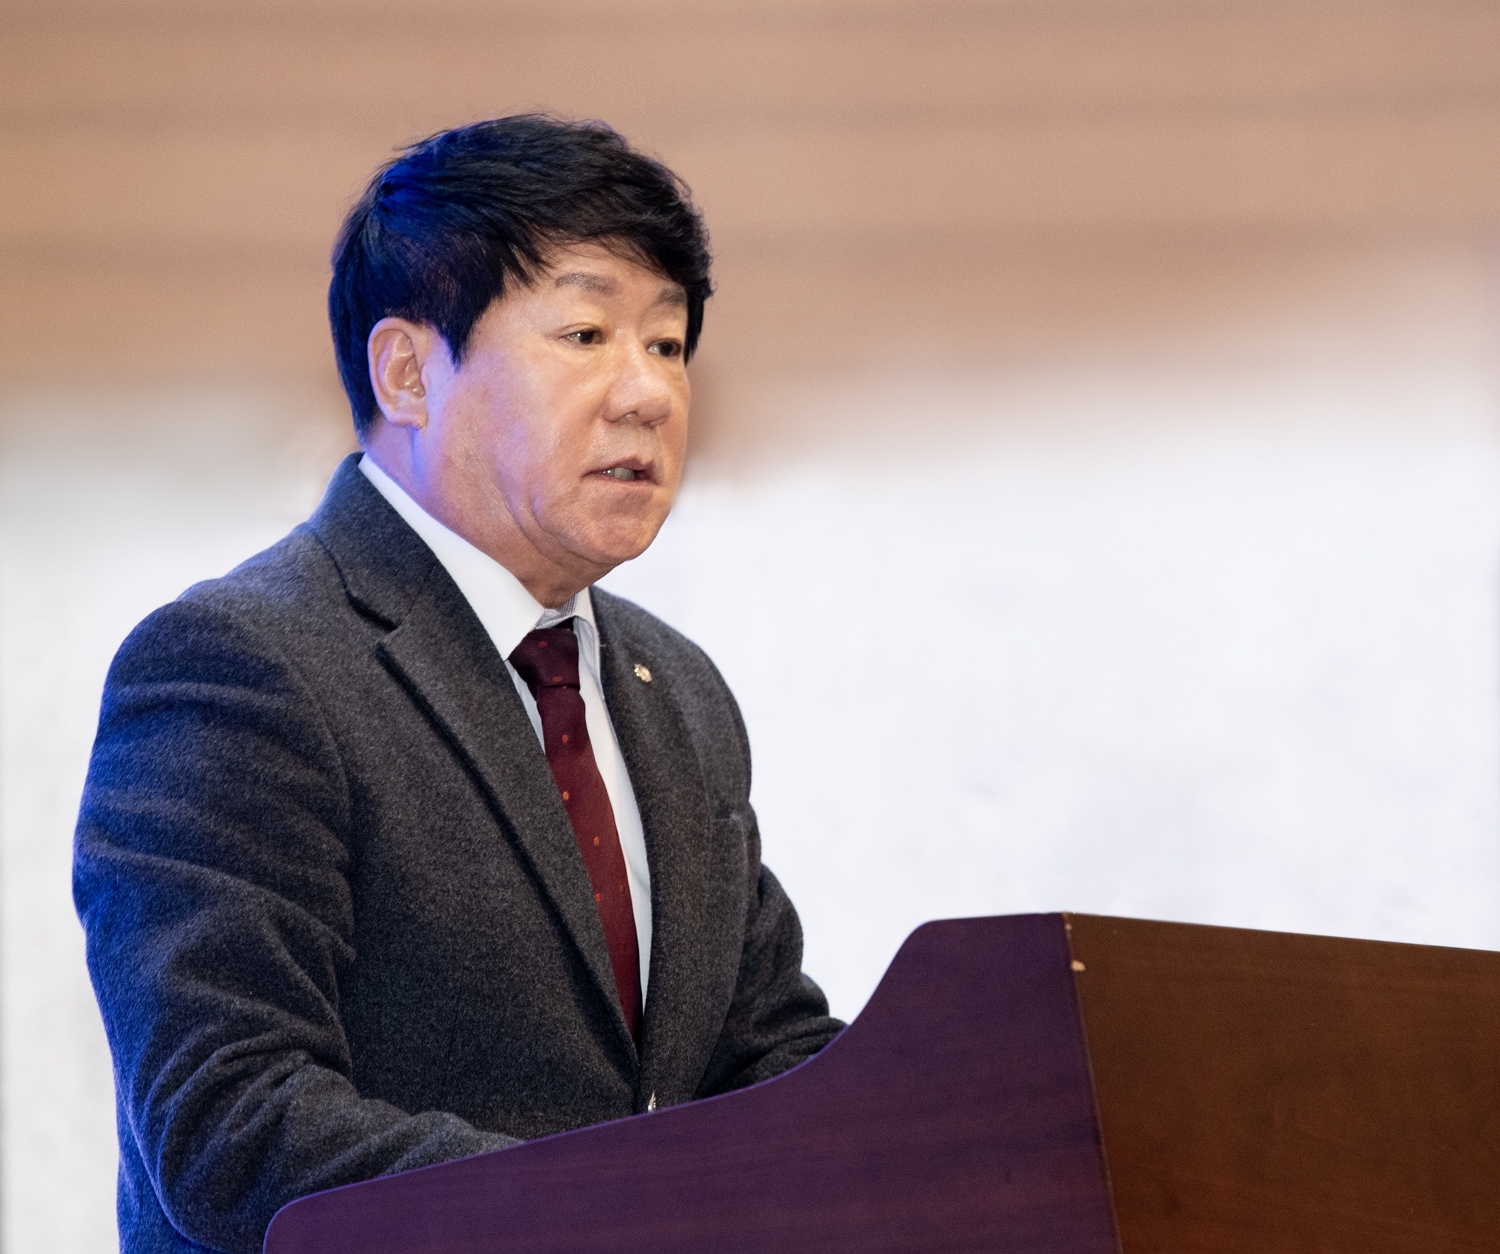 김윤식 신협중앙회장, “지역과 서민을 위한 과감한 도전 펼칠 것”